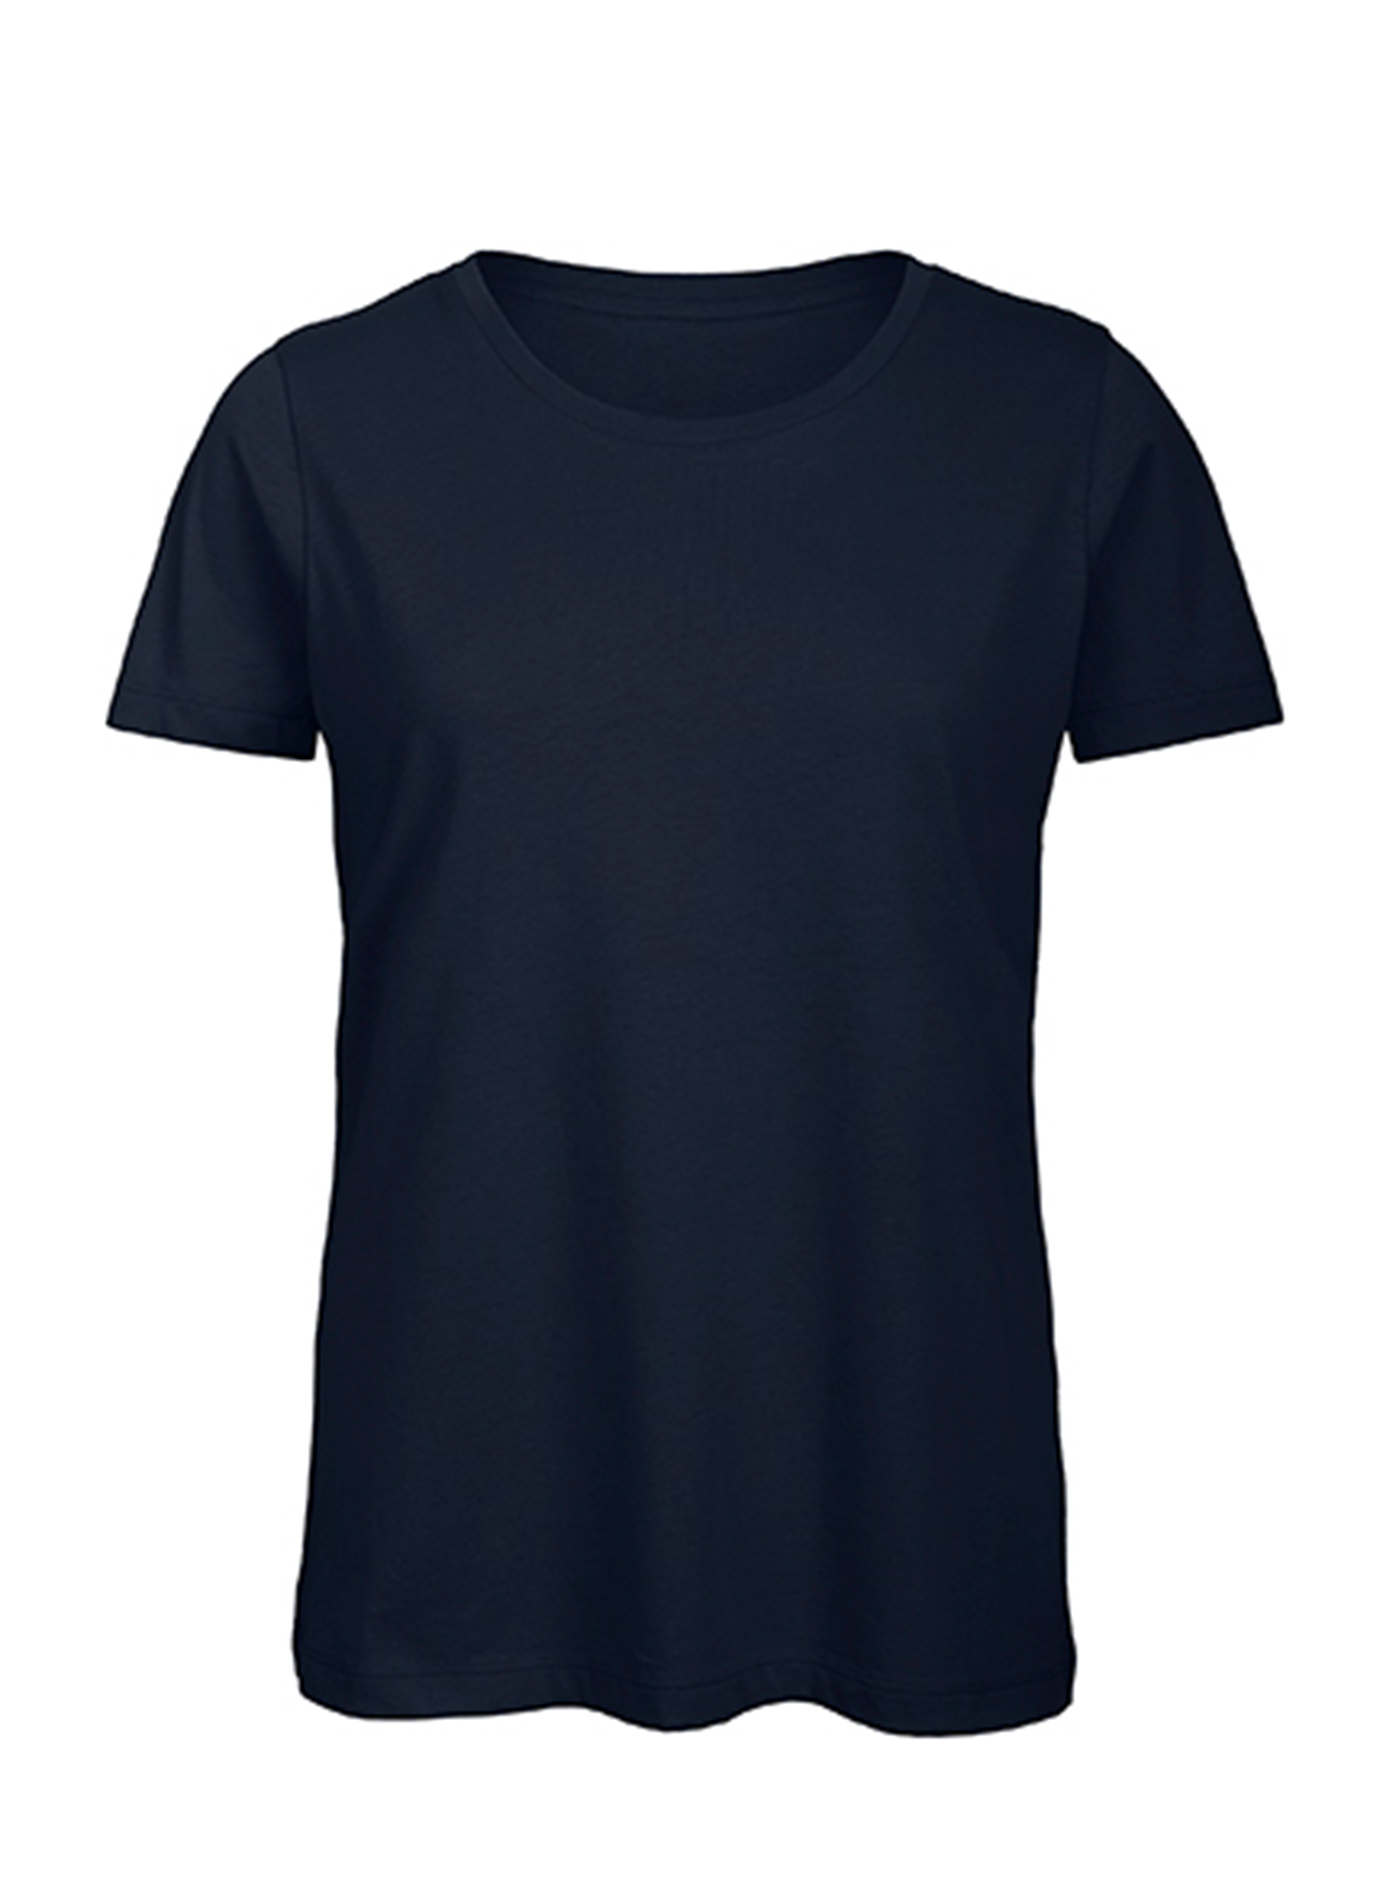 Dámské tričko B&C Collection Inspire - Námořnická modrá XXL